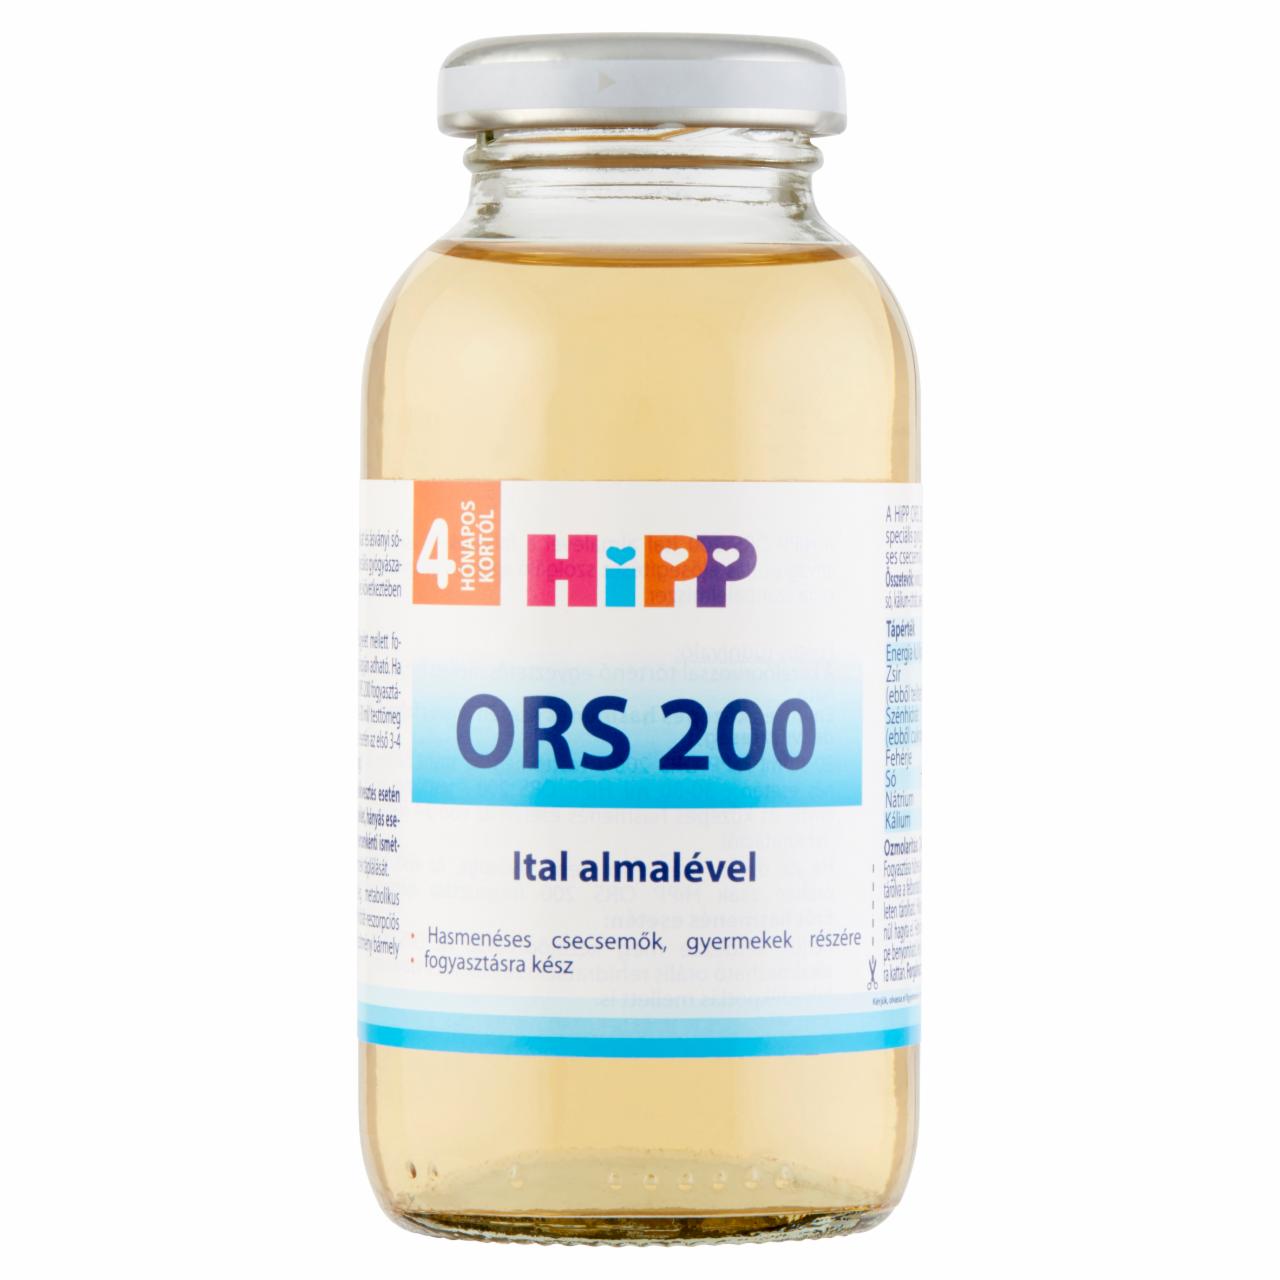 Képek - HiPP ORS 200 ital almalével 4 hónapos kortól 0,2 l